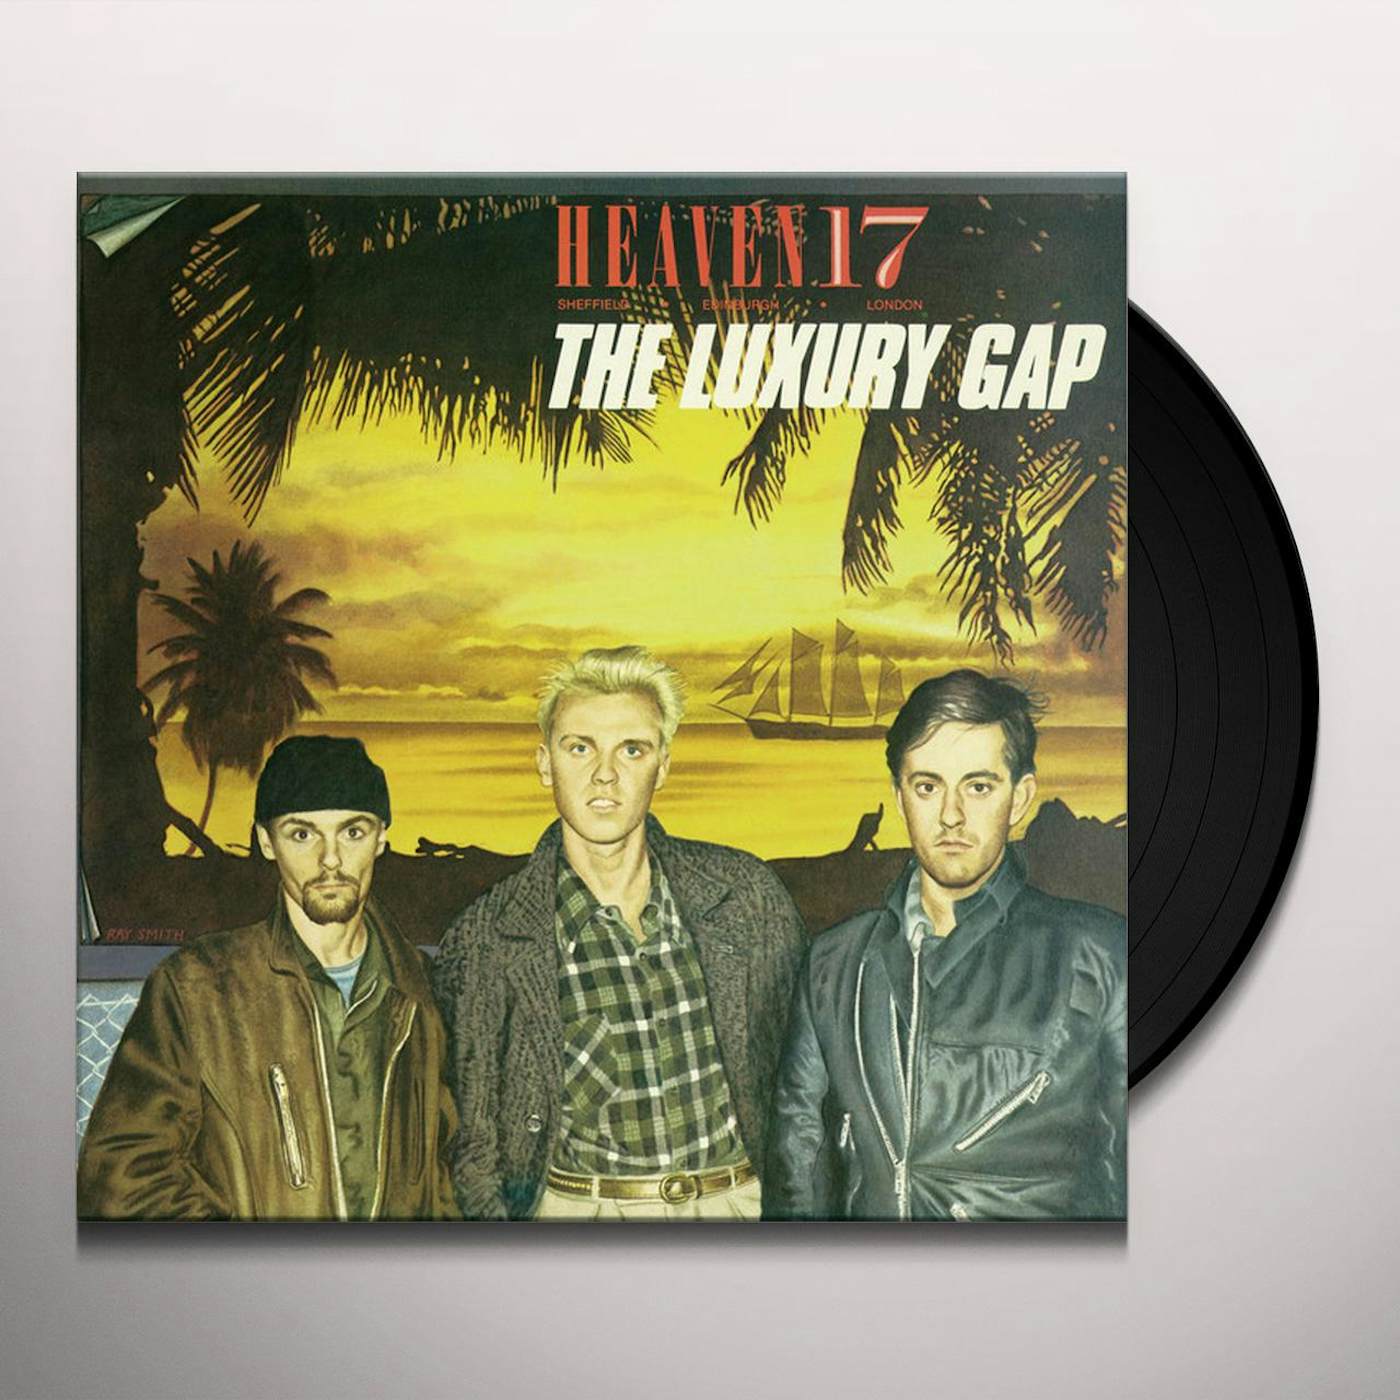 Heaven 17 LUXURY GAP Vinyl Record